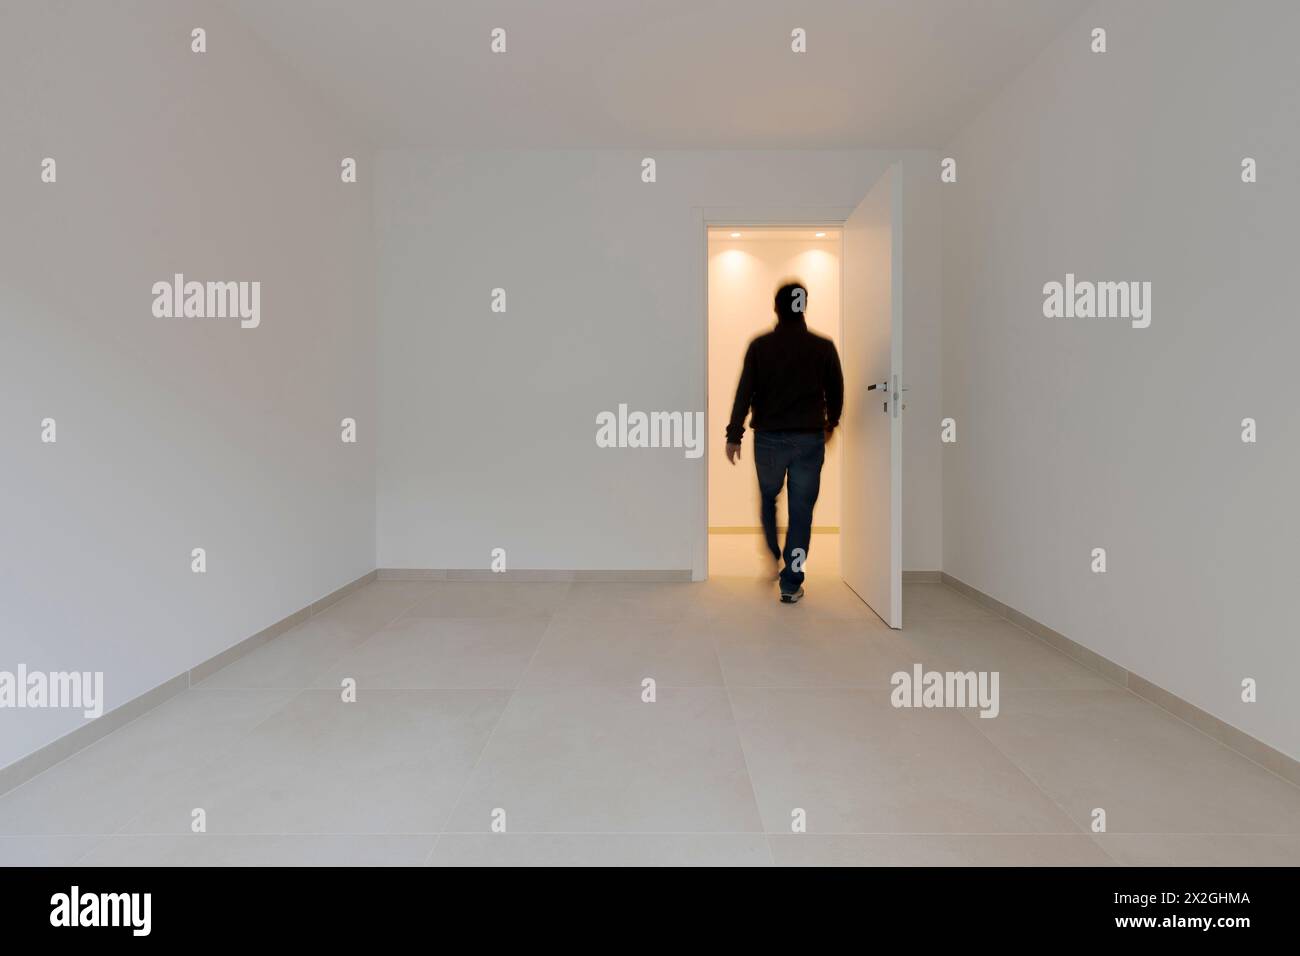 Un uomo in una stanza vuota esce e viene visto da dietro muoversi. Immagini concettuali. Si tratta di un adulto che cammina verso l'uscita, Foto Stock